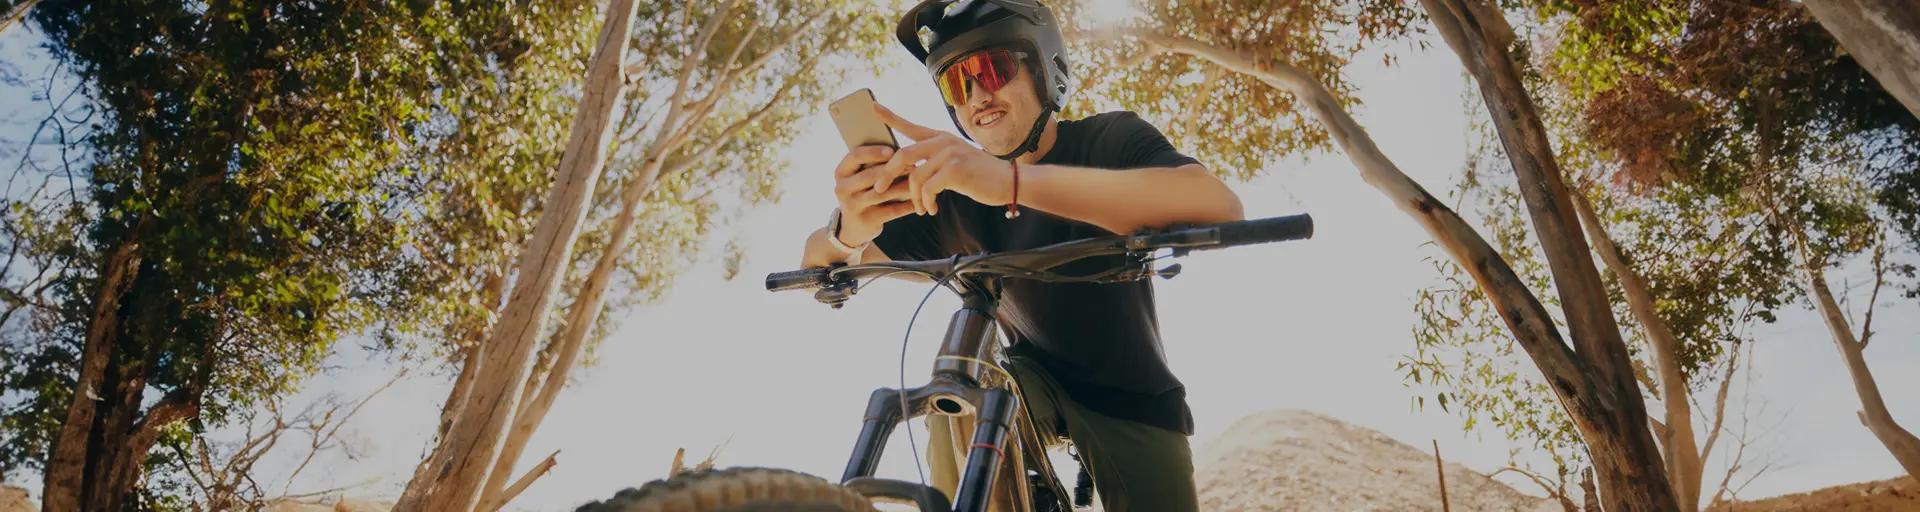 Imagem de um homem em cima de uma bicicleta segurando um celular